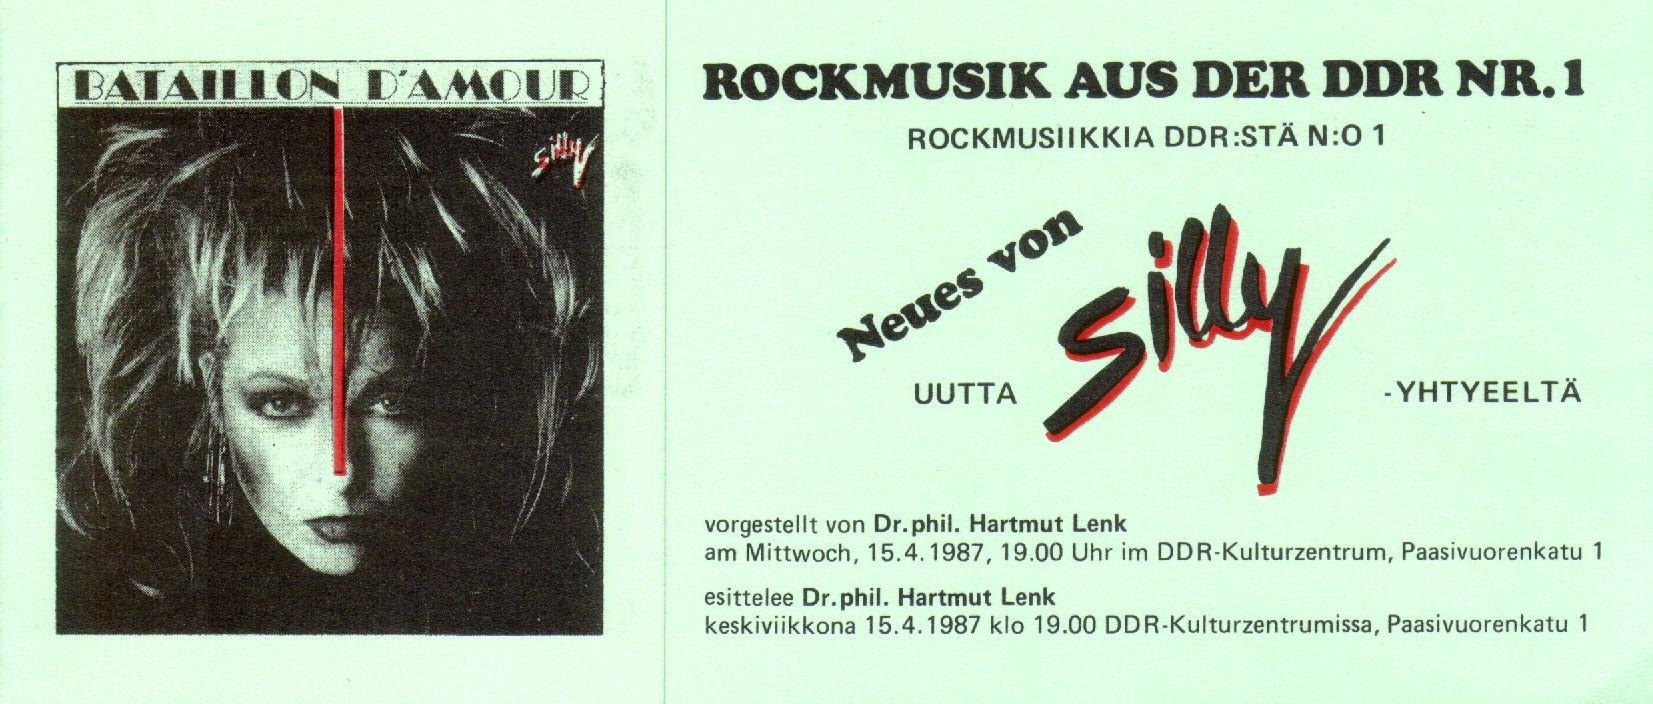 Einladung zur 1. KuZ-Veranstaltung Rockmusik aus der DDR